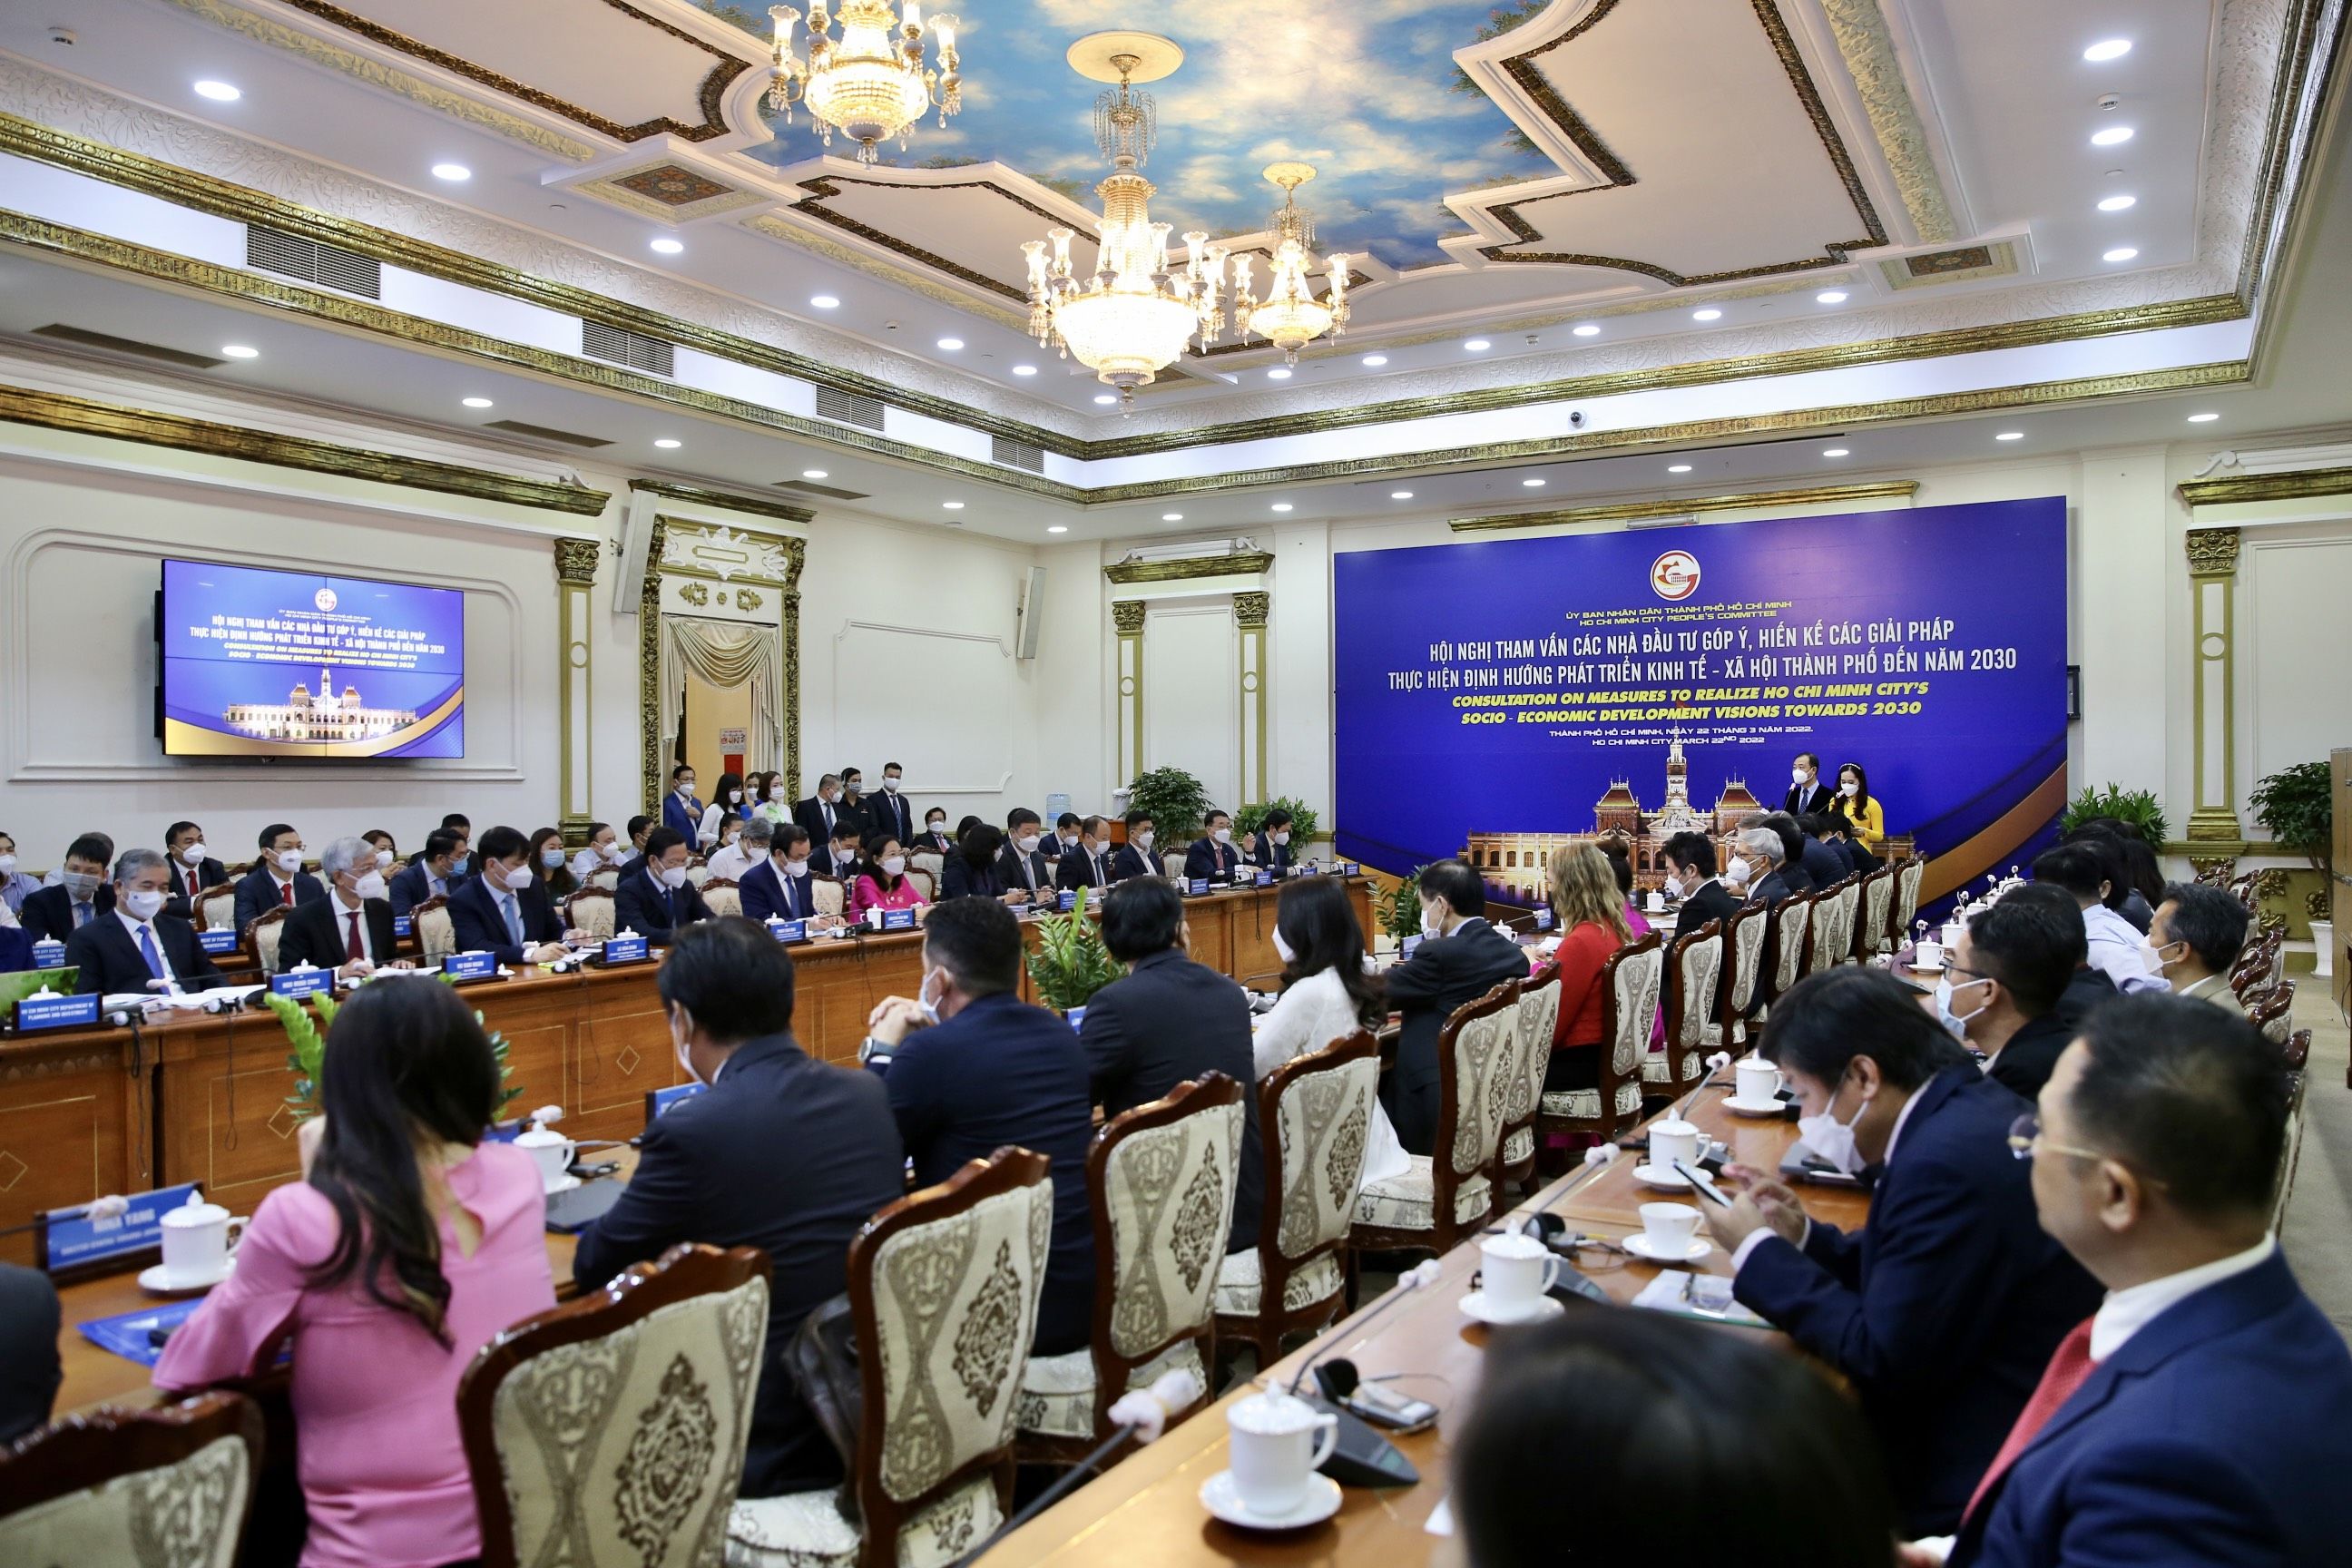 Cảng Nam Hải Tham Gia Hội Thảo Hiến Kế Phát Triển Kinh Tế - Xã Hội Tp Hồ Chí Minh Đến Năm 2030